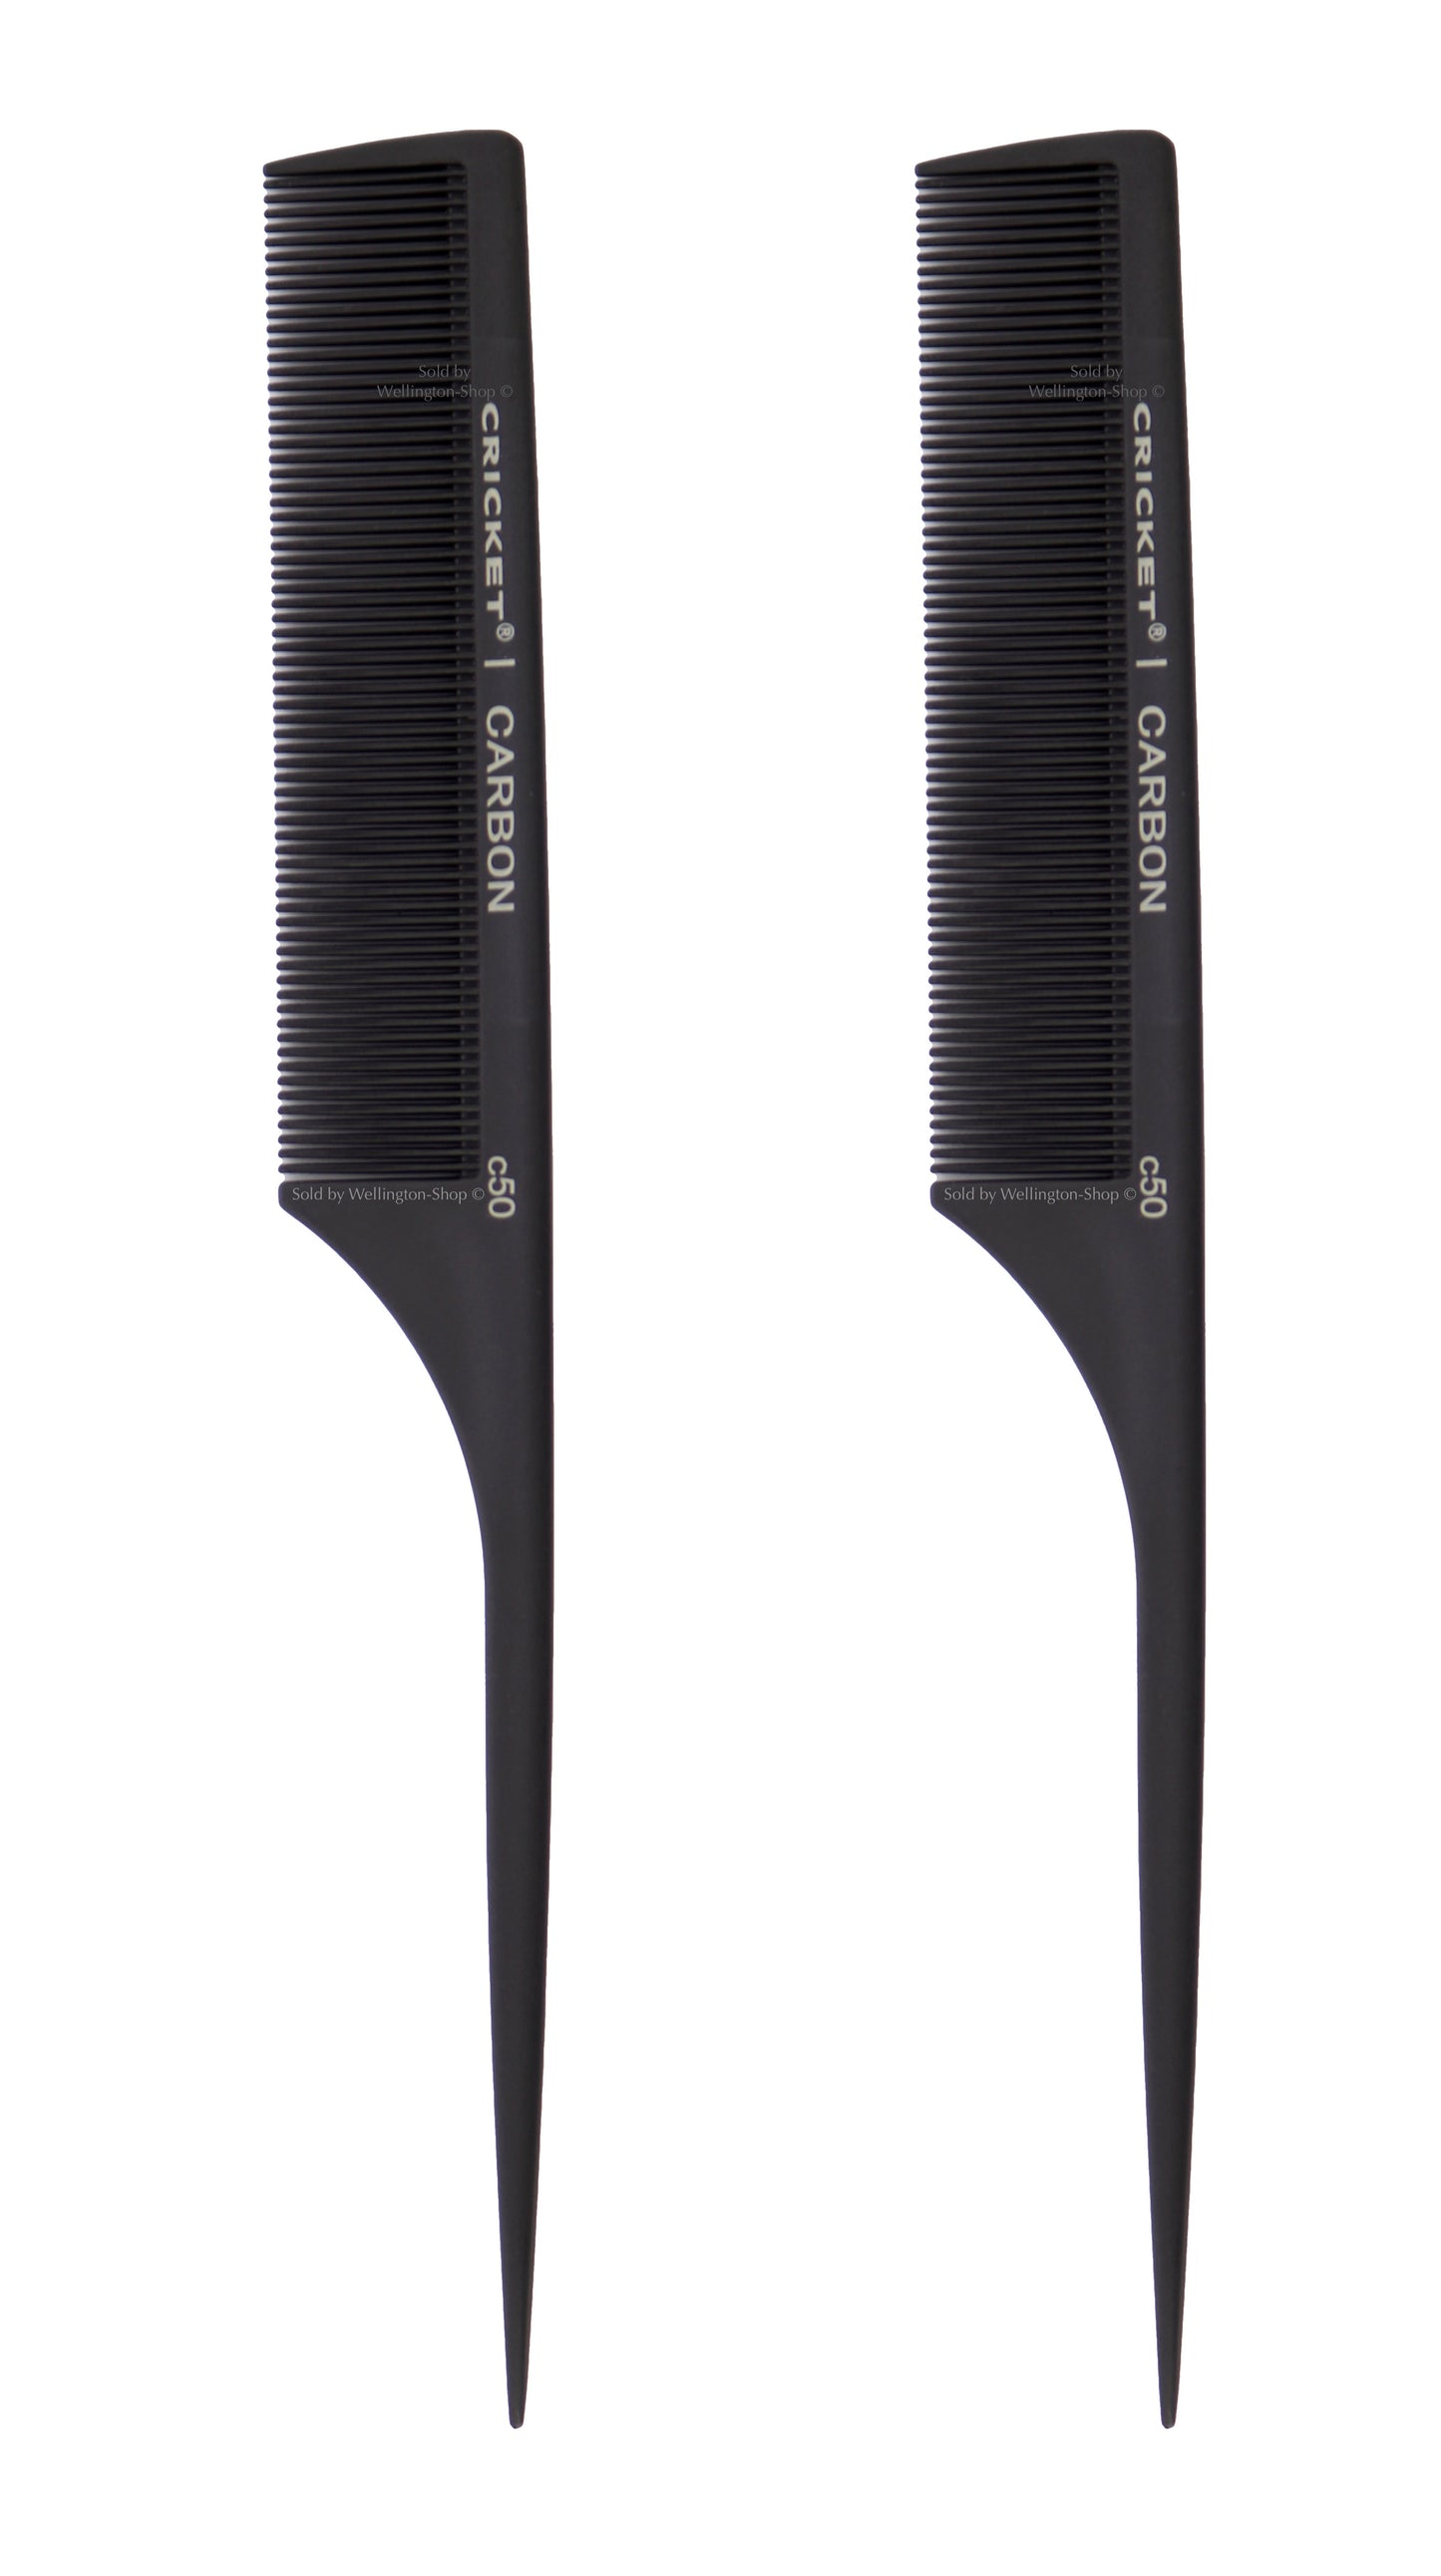 comb barber comb hair cutting comb hair comb  barber clippers  krest combs  rat tail comb 